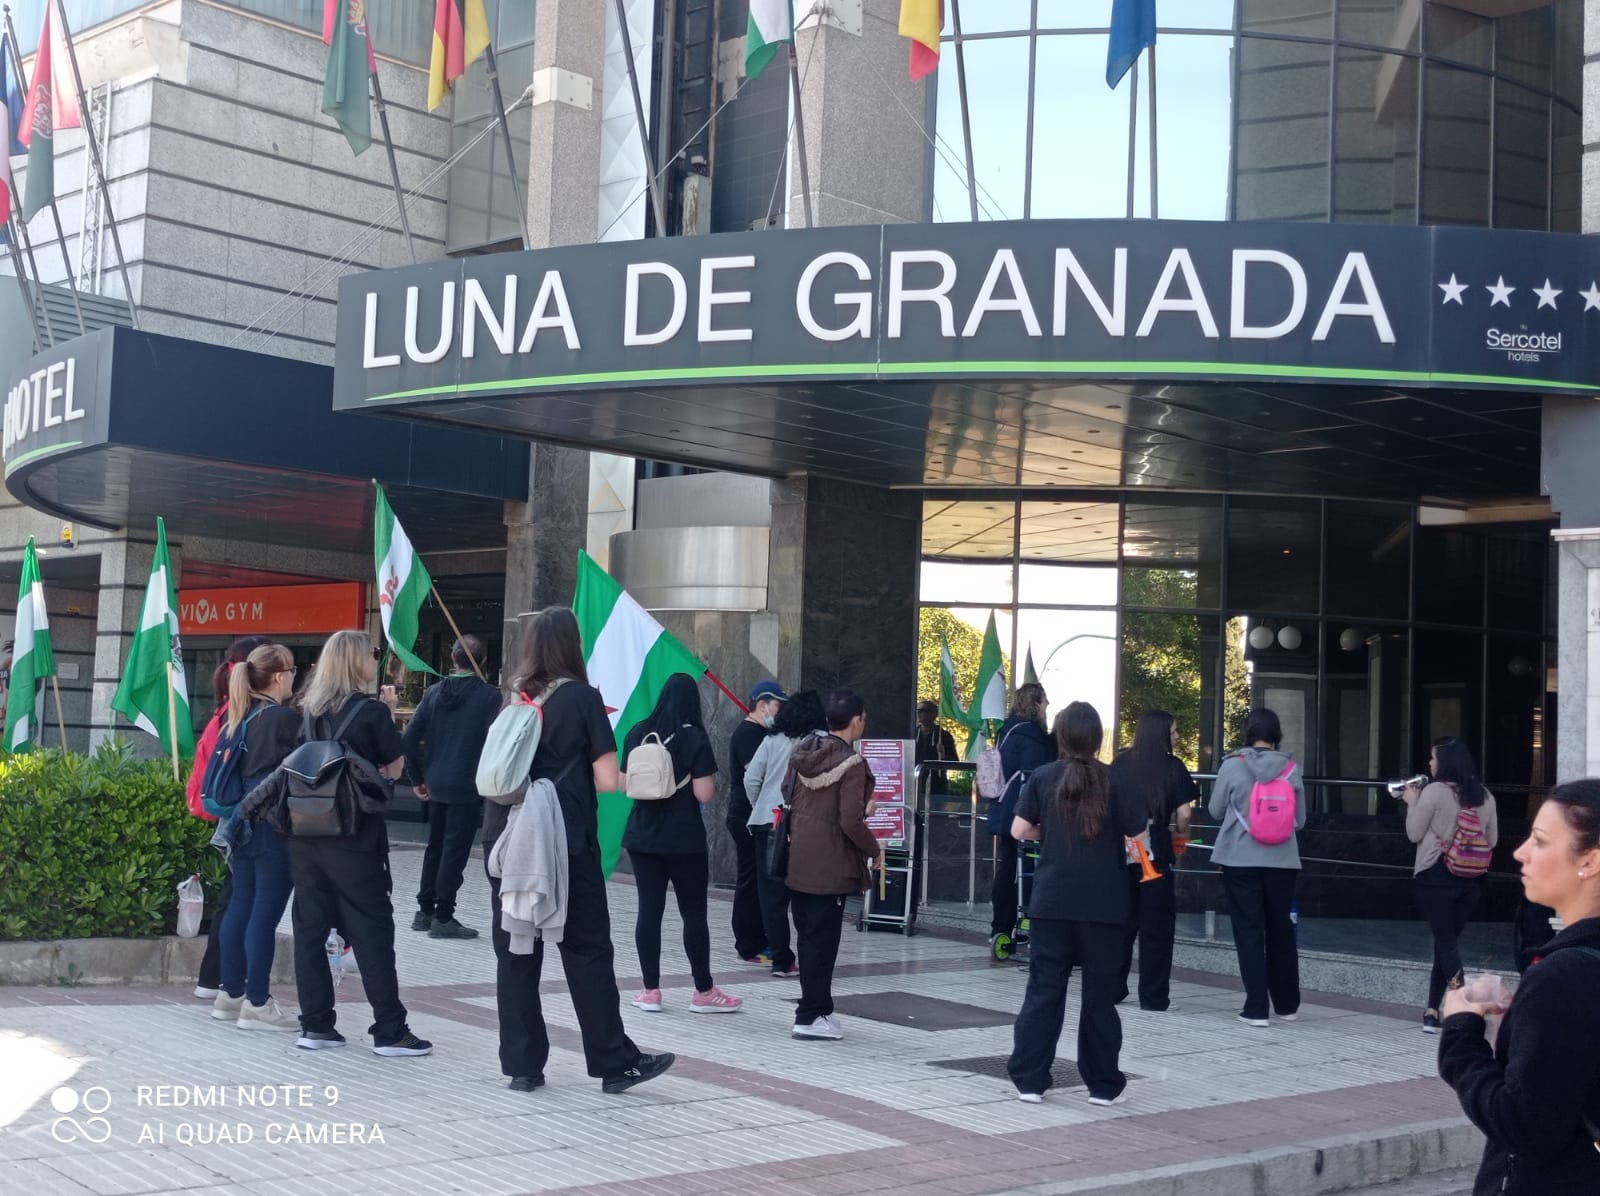 Nueva jornada de huelga a las puertas del Hotel Luna de Granada